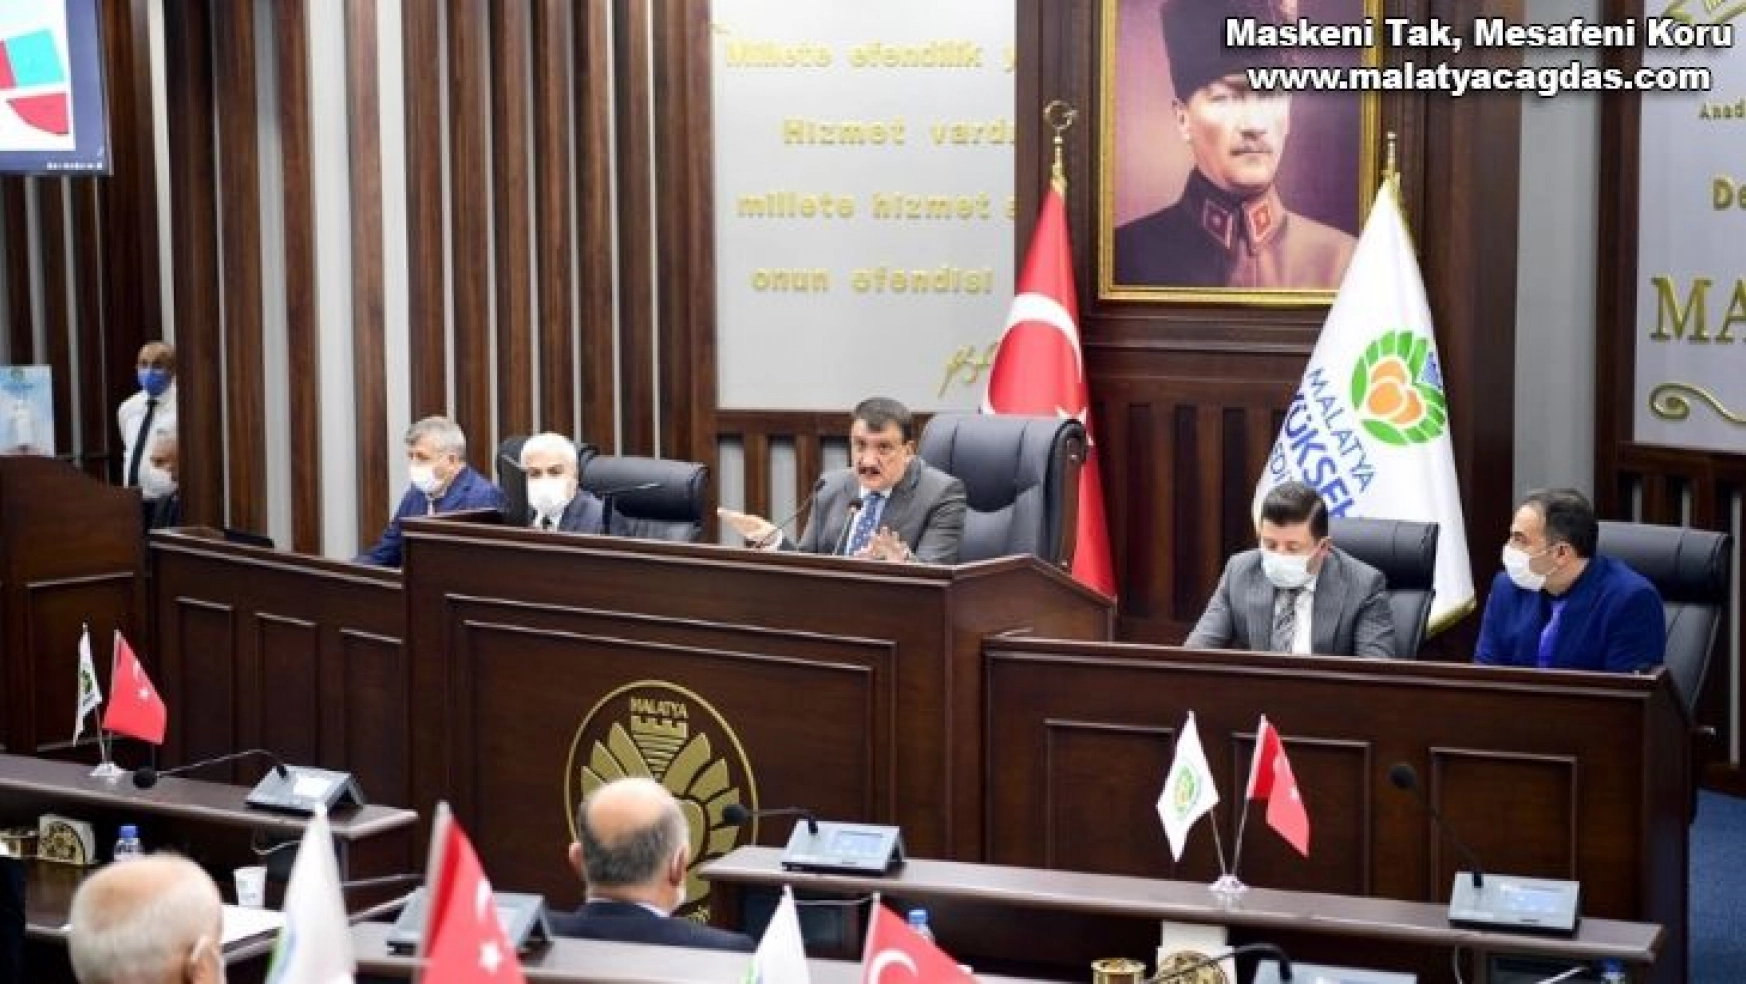 Malatya Büyükşehir Belediye Meclisi 2. oturumu yapıldı